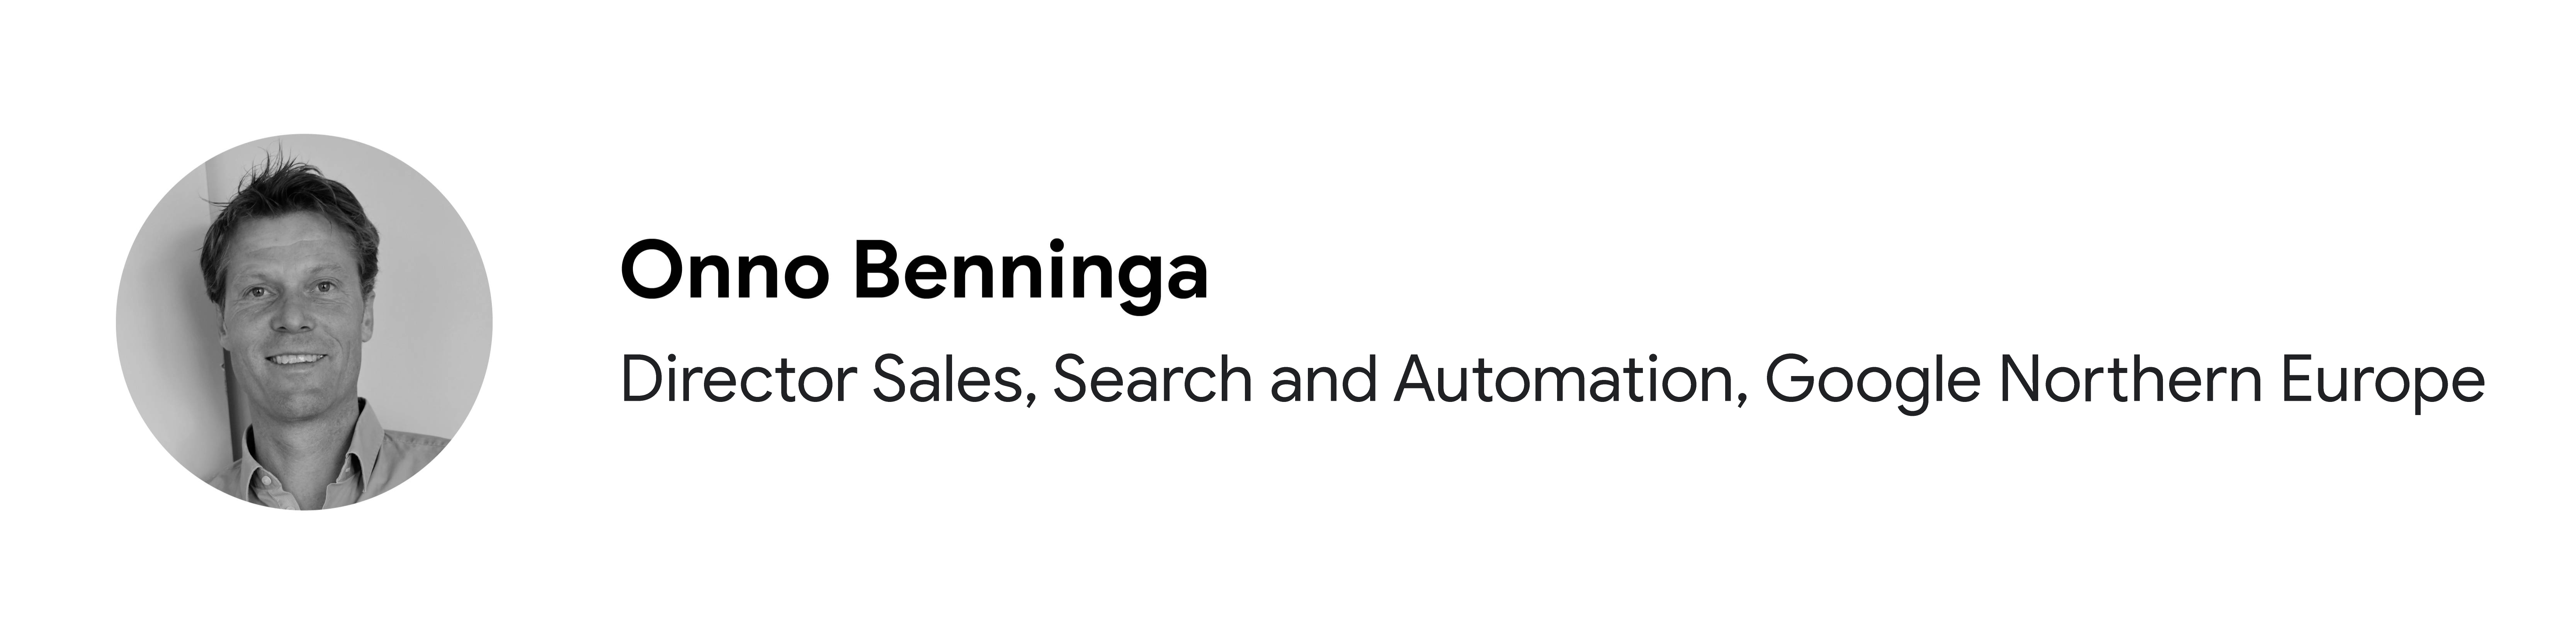 Google Northern Europe'ta Director Sales, Search and Automation pozisyonunda görev yapan katılımcı Onno Benninga'nın siyah beyaz portre fotoğrafı